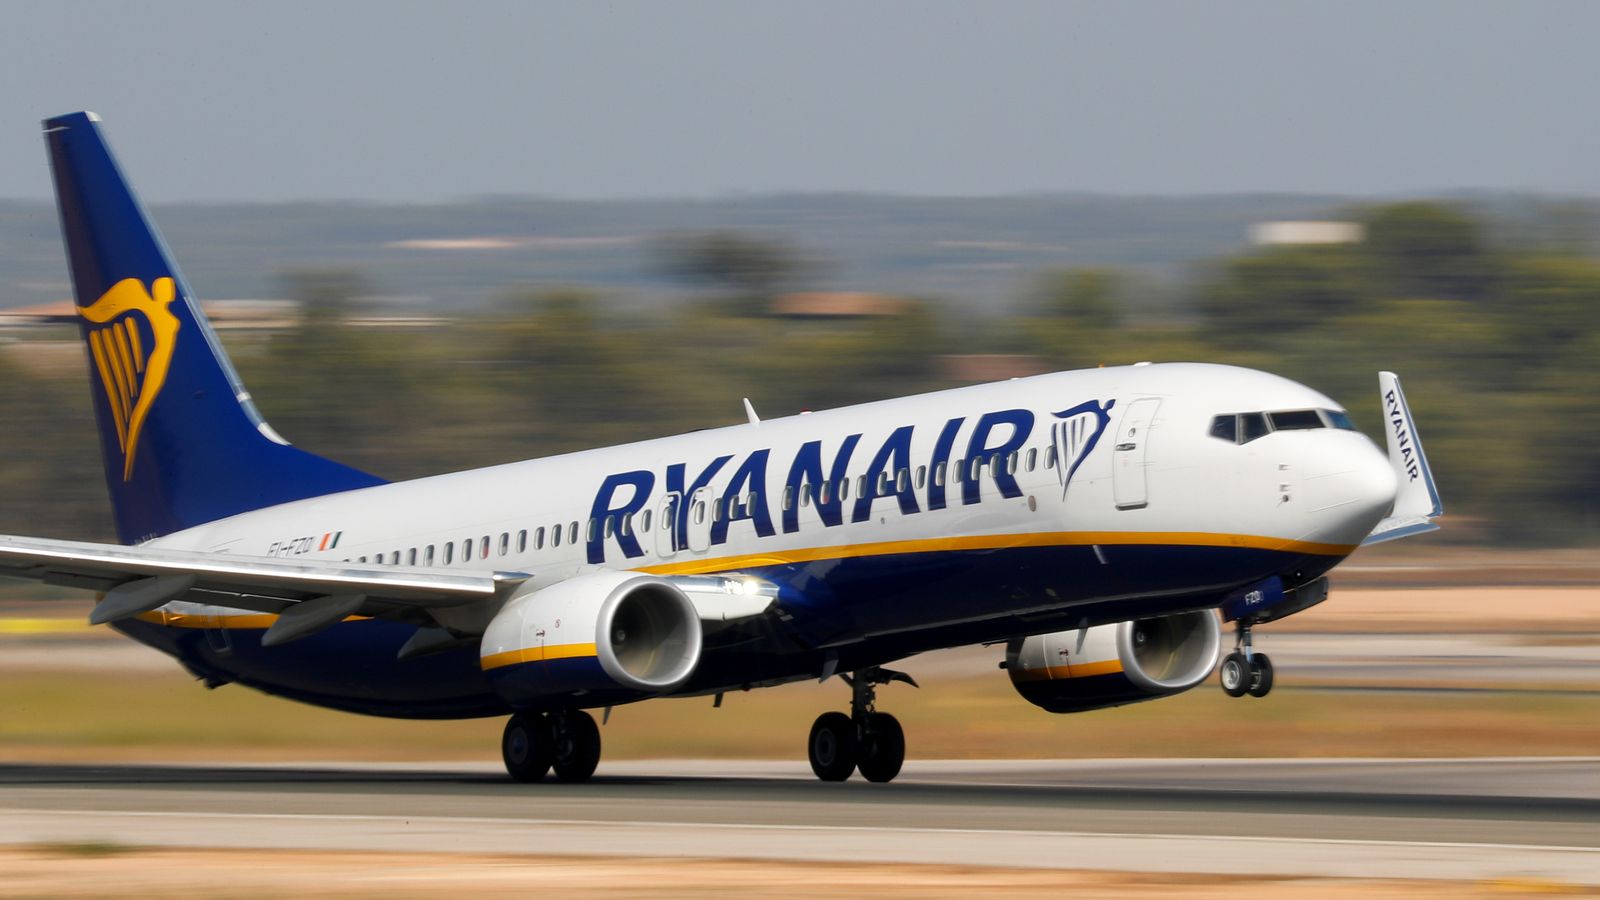 Η Ryanair ξεκινά τις καλοκαιρινές προσφορές, από €24.99